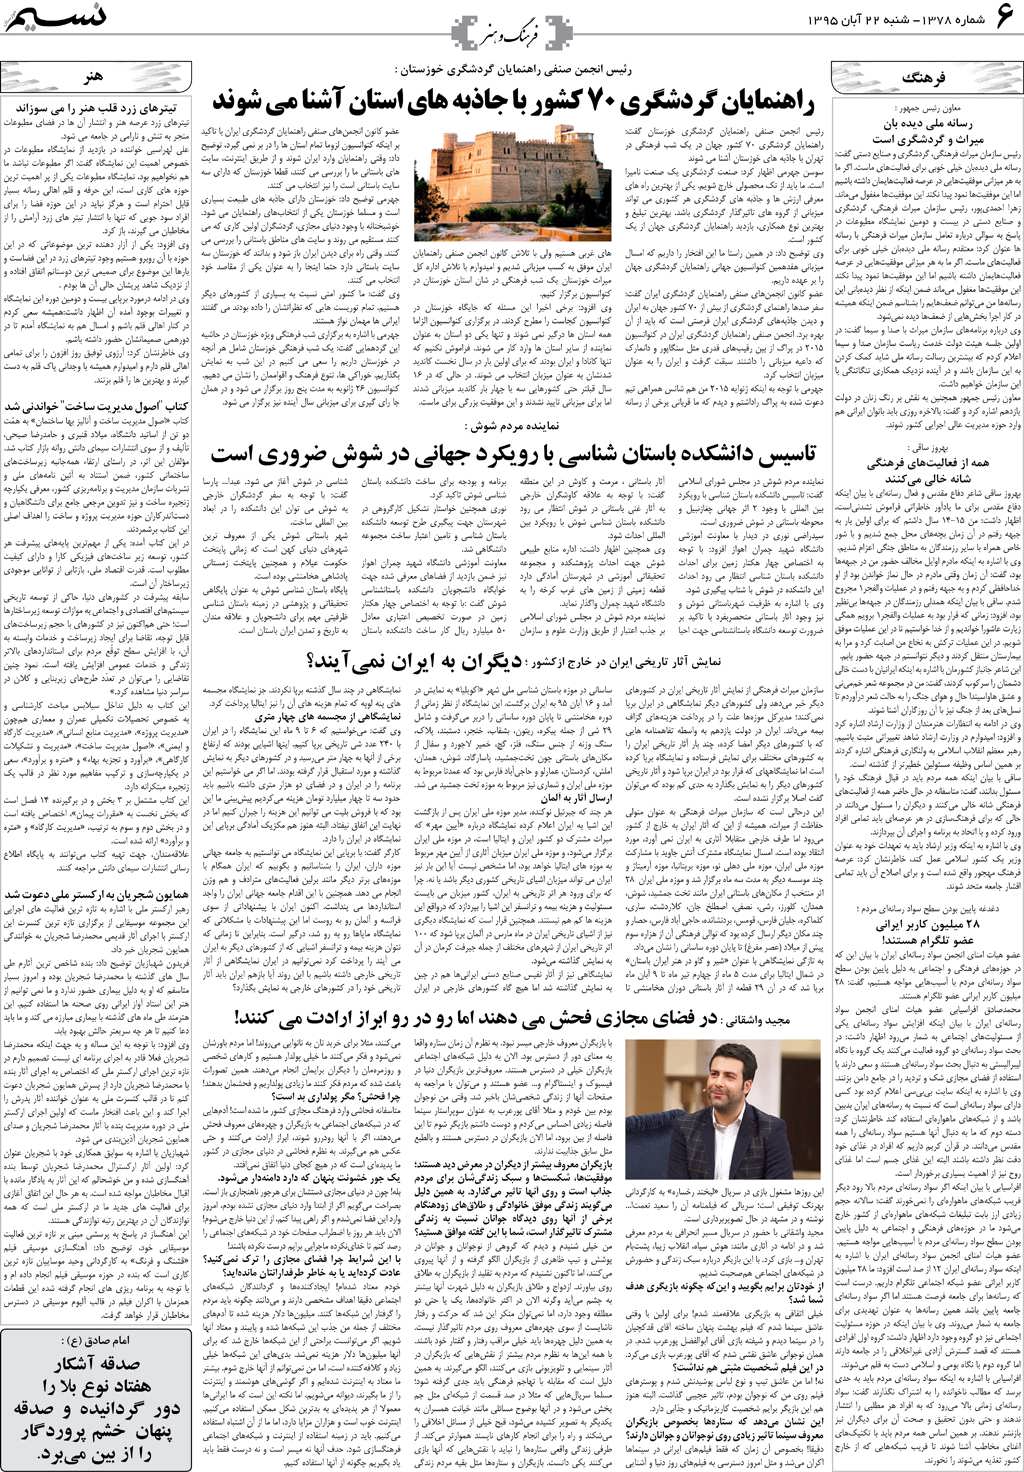 صفحه فرهنگ و هنر روزنامه نسیم شماره 1378